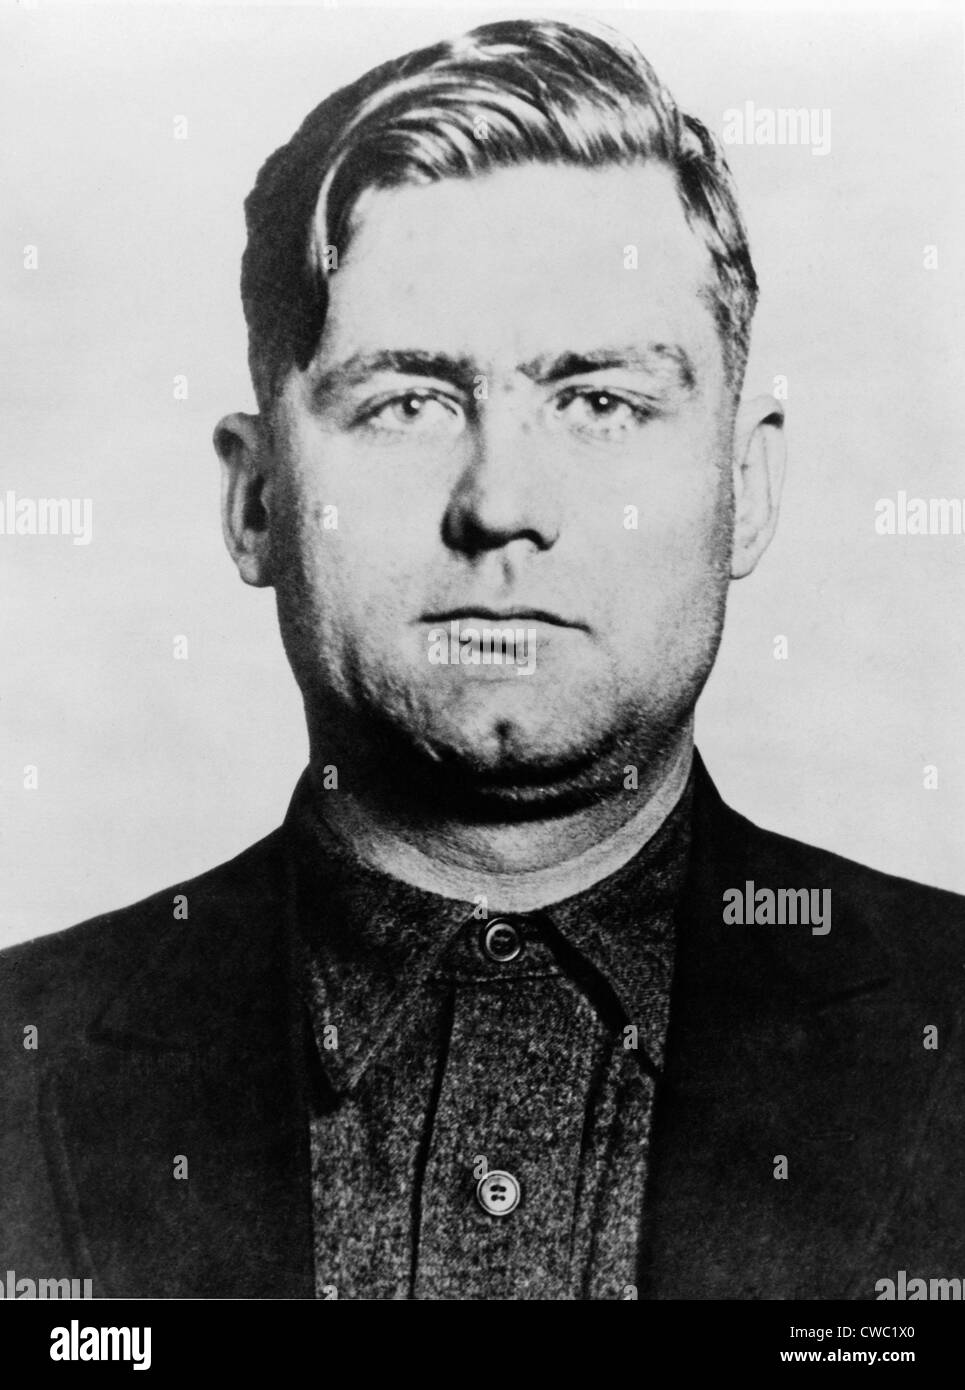 George "Bugs" Moran 1891-1957 Chicago Gangster und Polnisch-irischer der Chef der Nordseite Bande ein Rivale von Al Capone Mob. Stockfoto